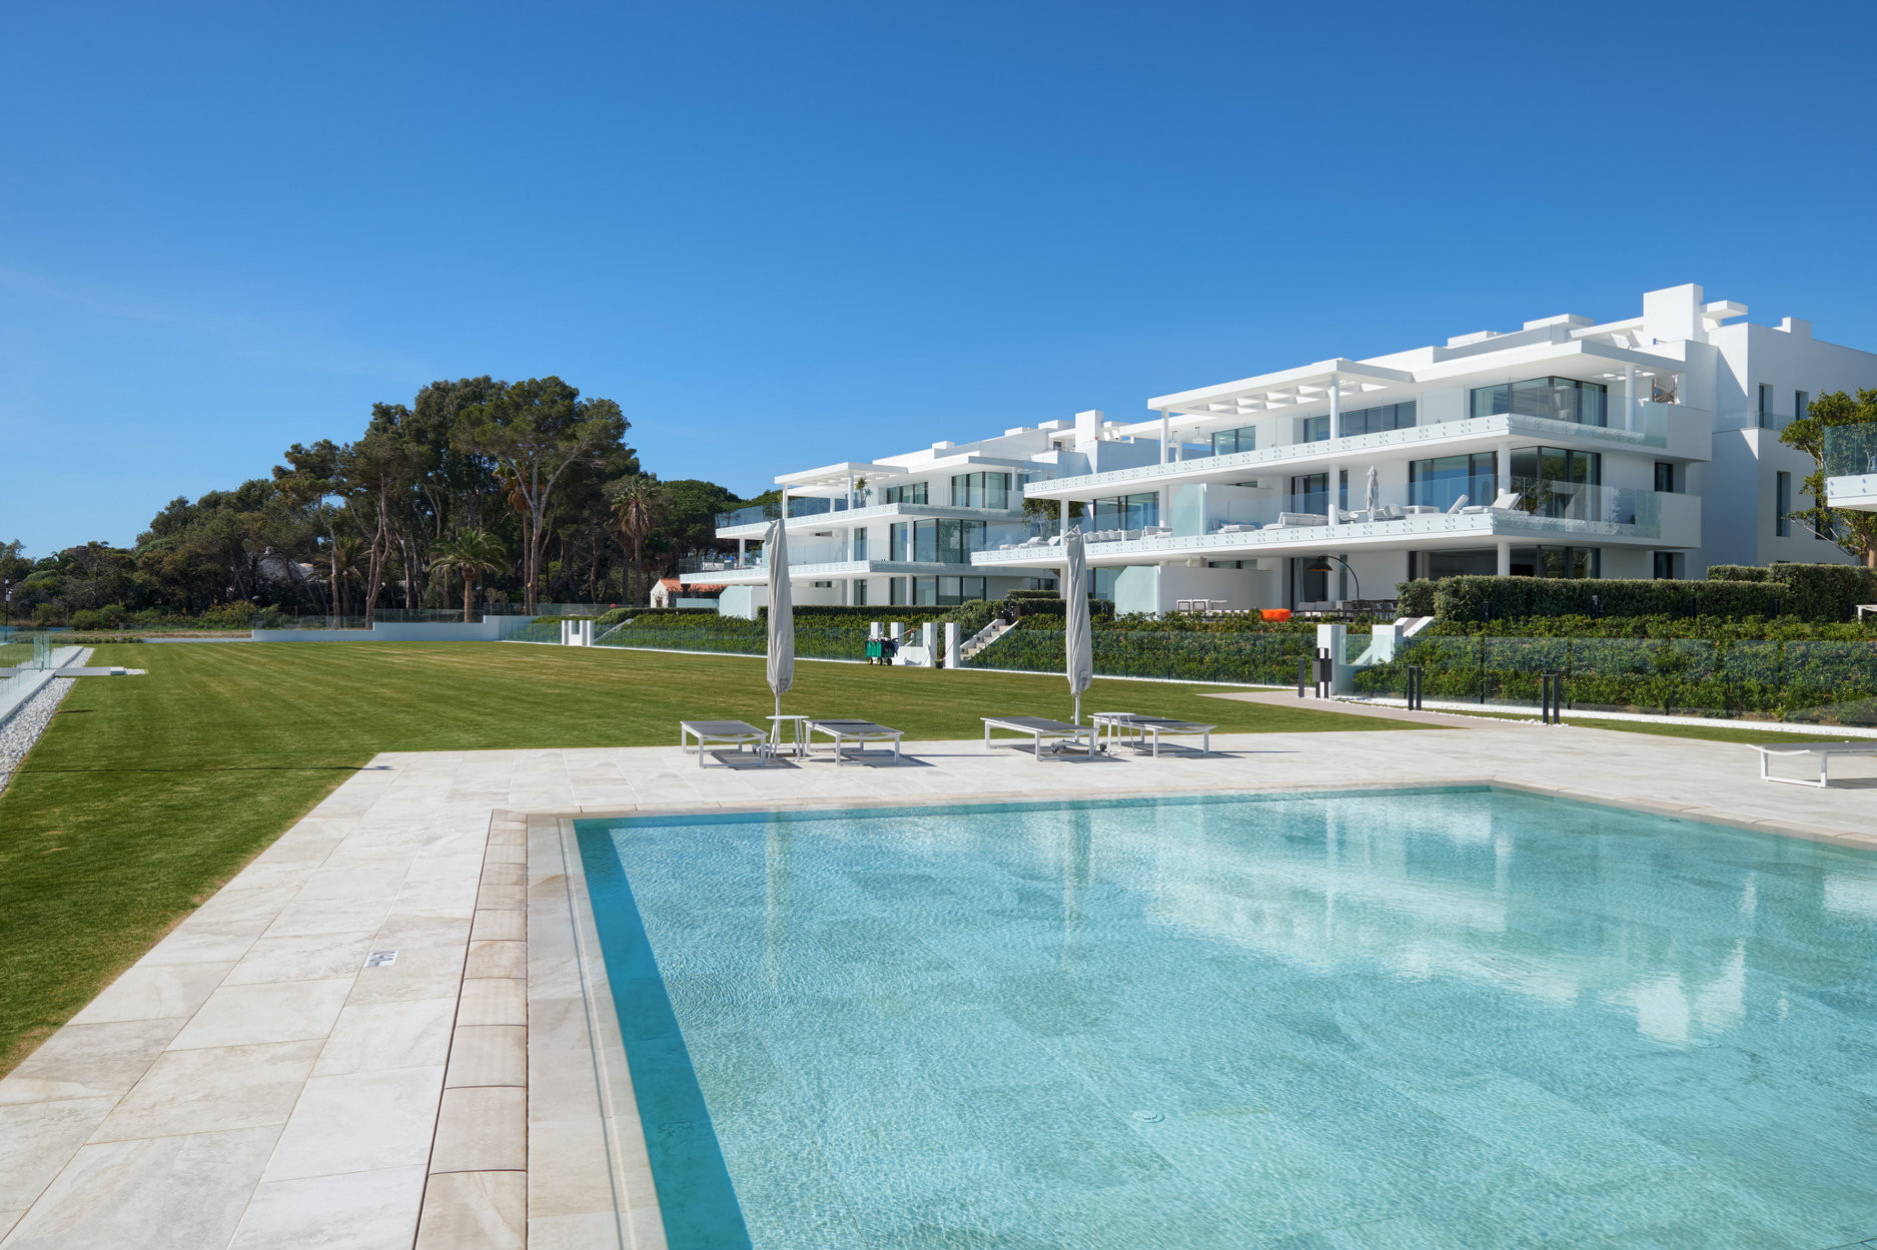 Appartement neuf de 4 chambres vue spectaculaire sur la mer - Espagne